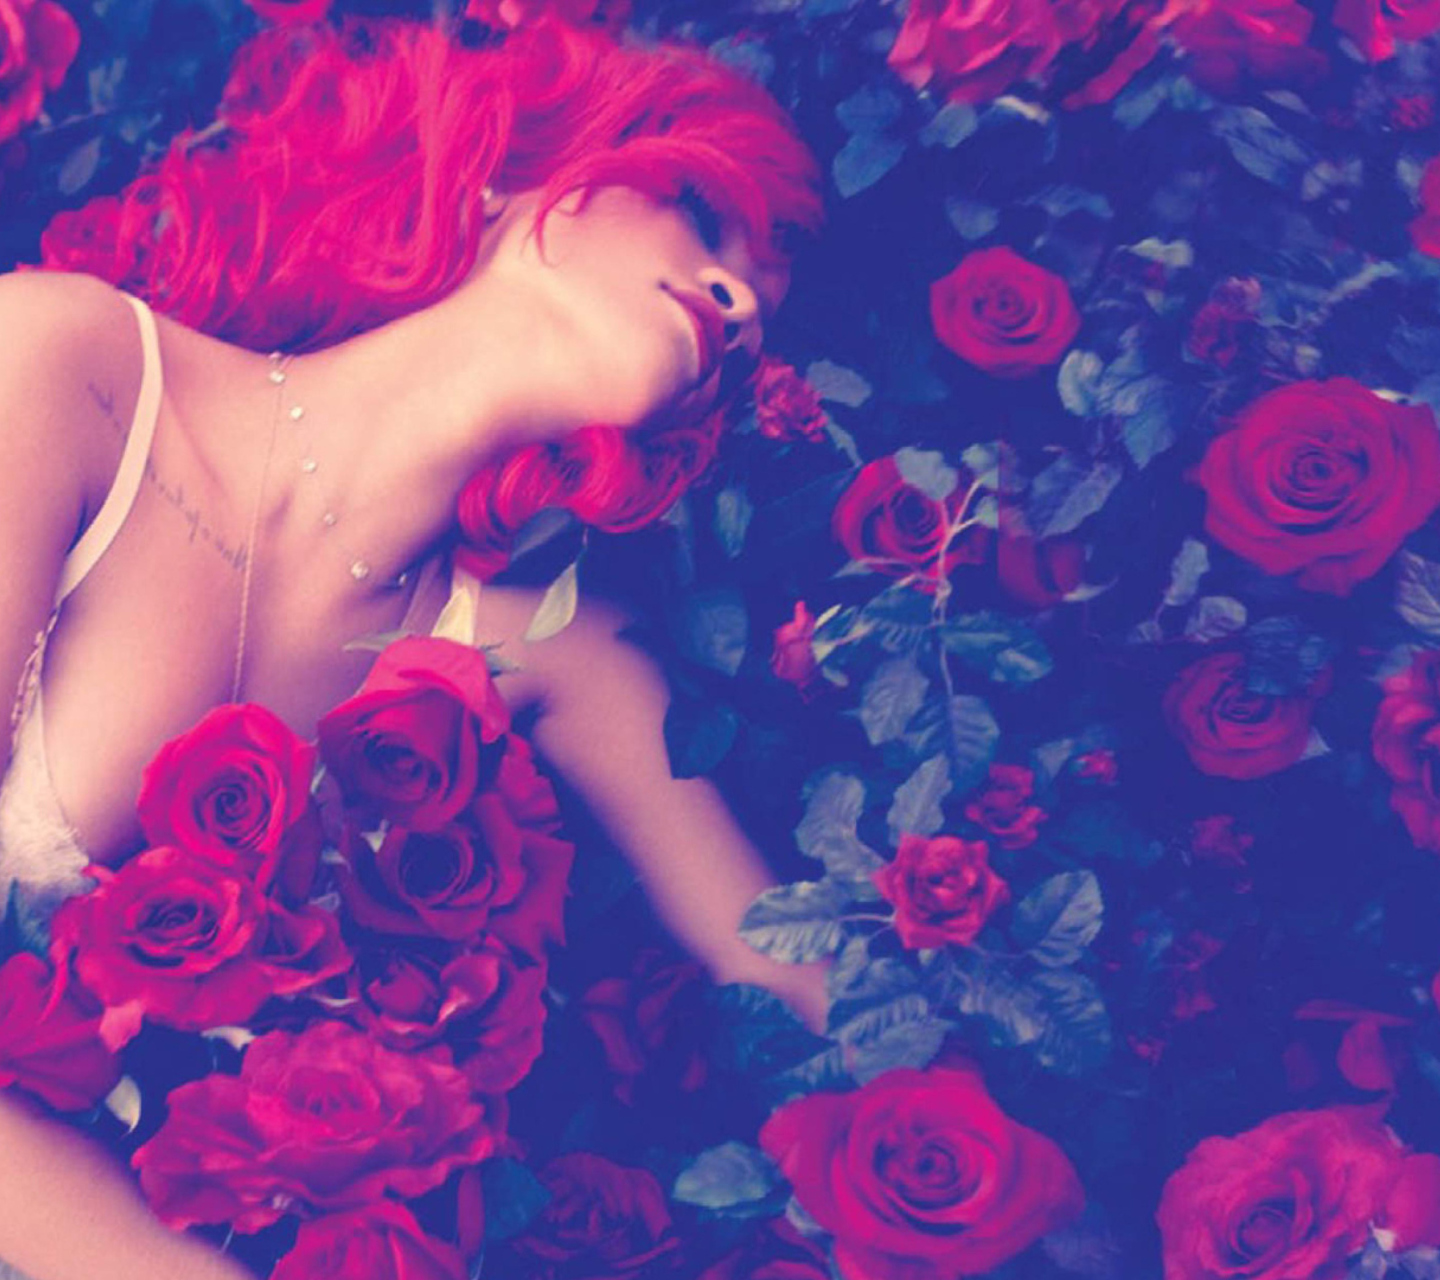 Rihanna's Roses screenshot #1 1440x1280